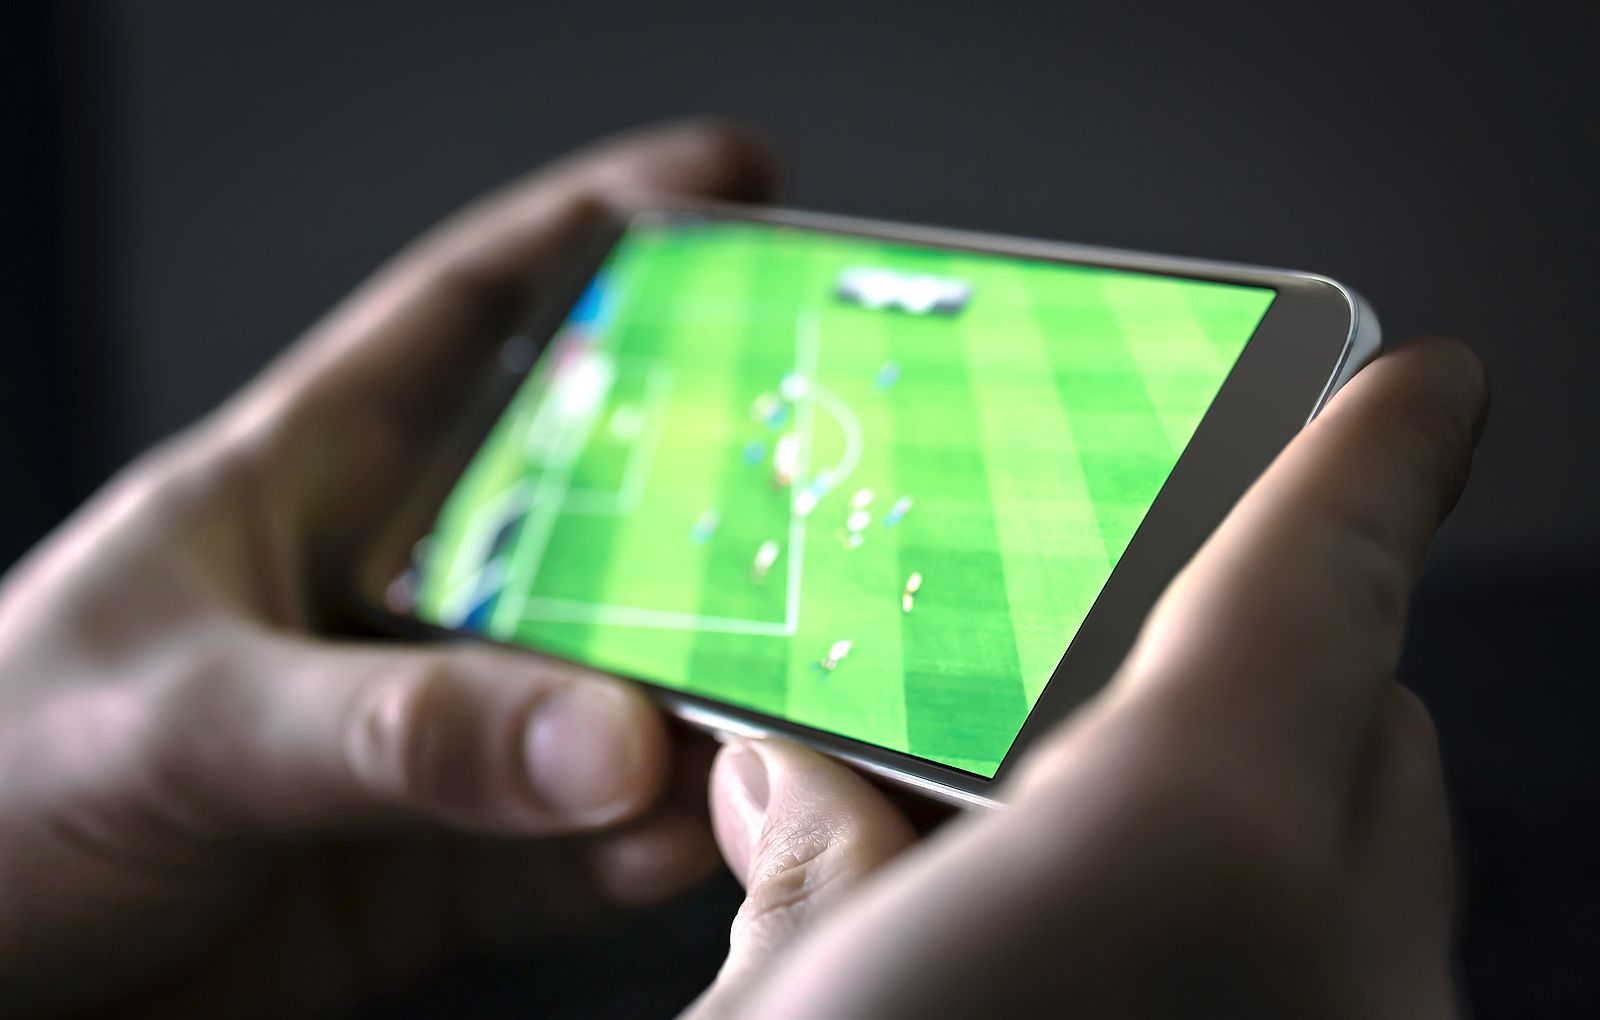 Ver los partidos de fútbol en internet de manera ilegal tiene los días contados